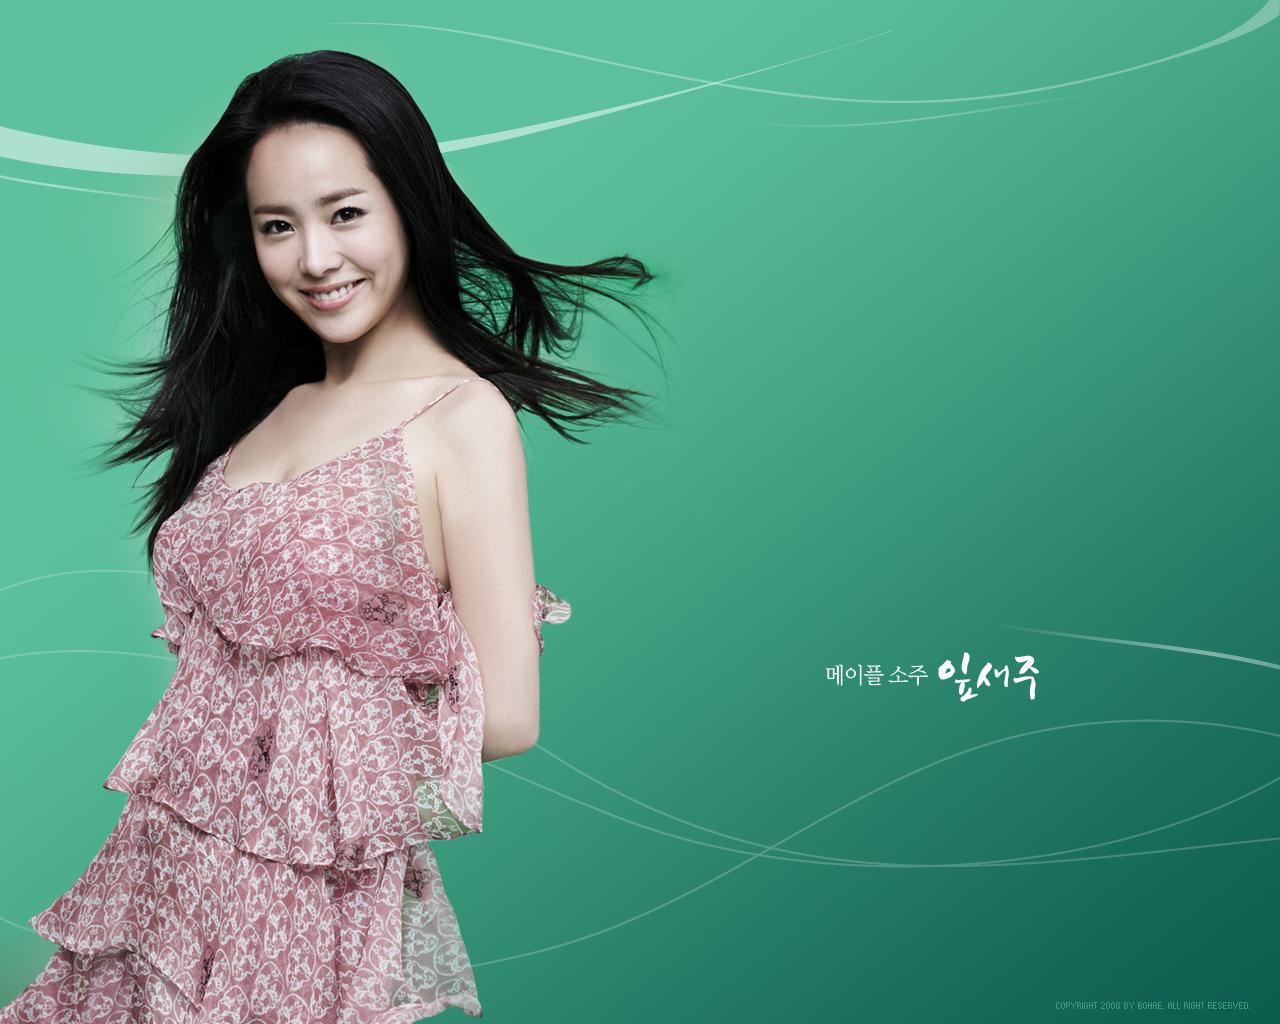 8k Han Ji Min Background